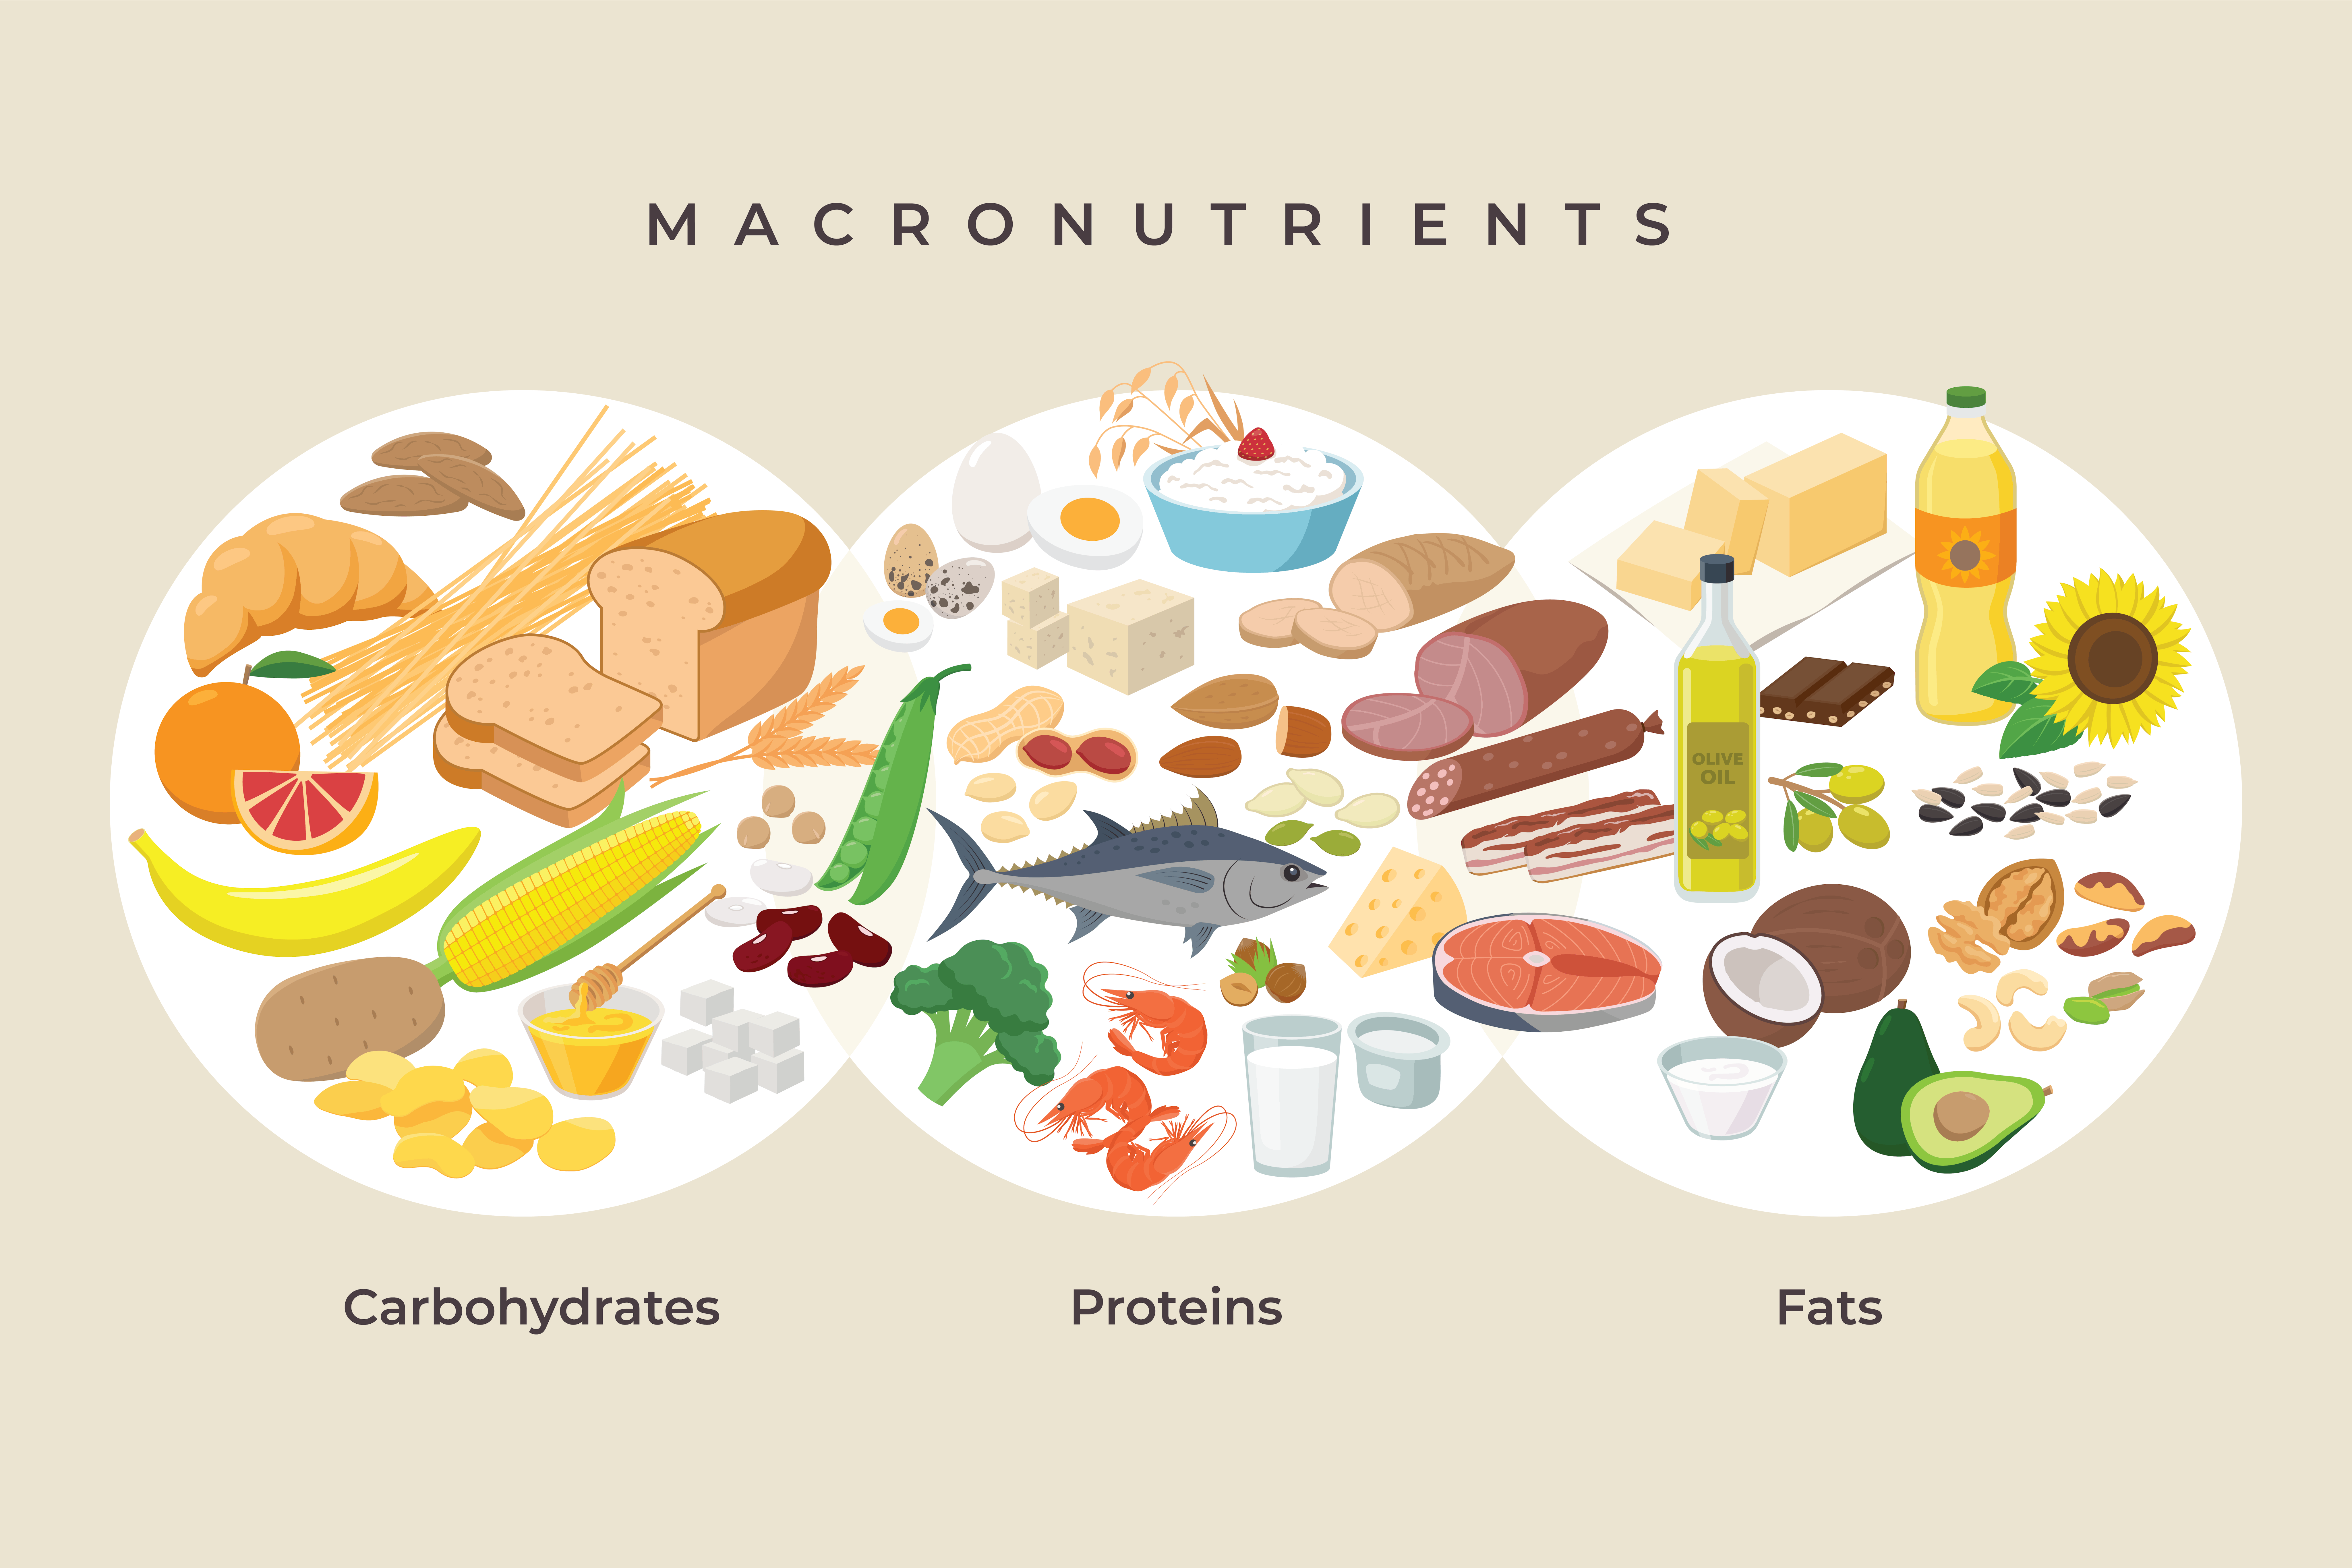 Understanding macronutrients